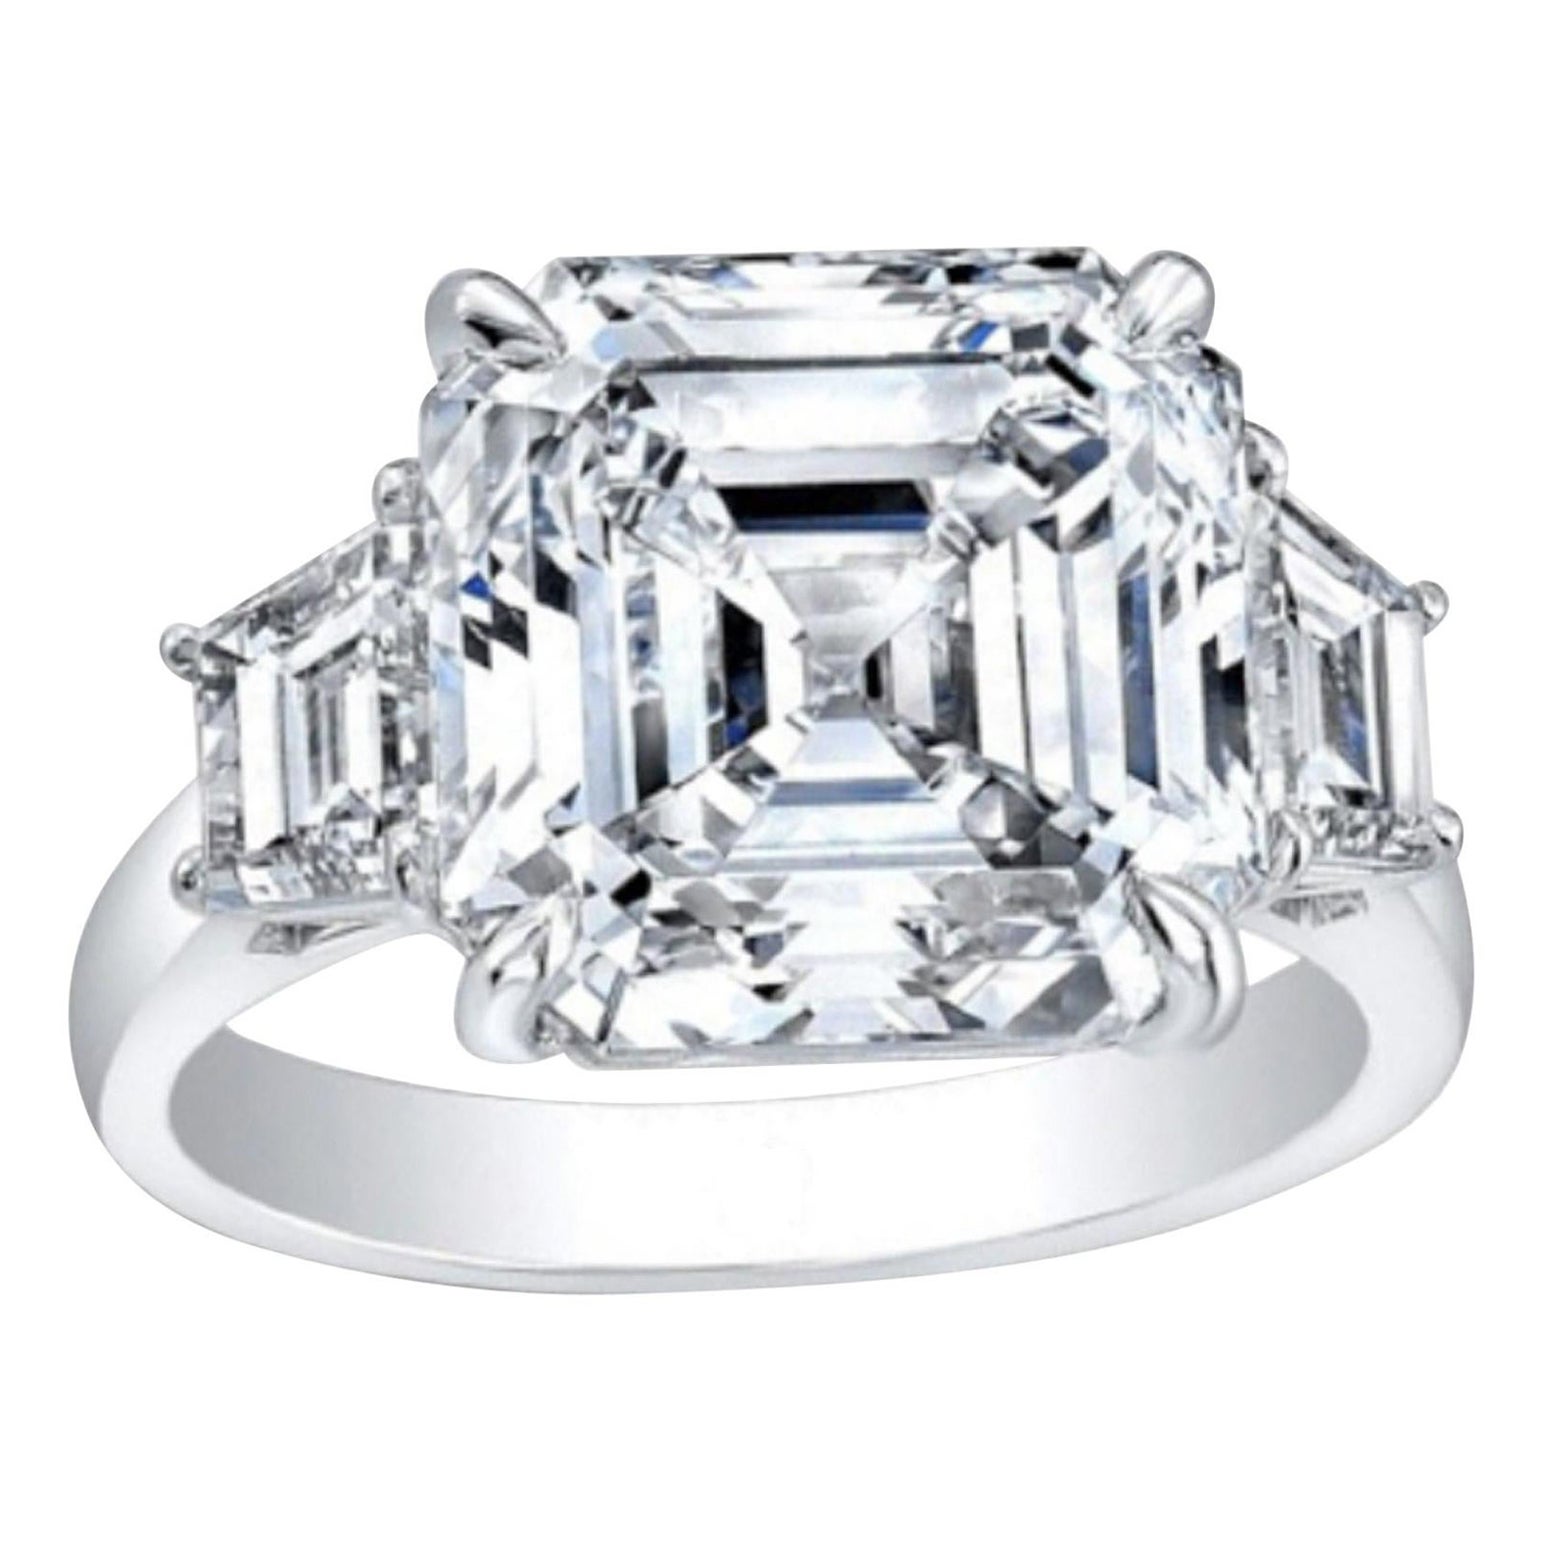 GIA Certified 3.50 Carat Asscher Cut Diamond Engagement Ring